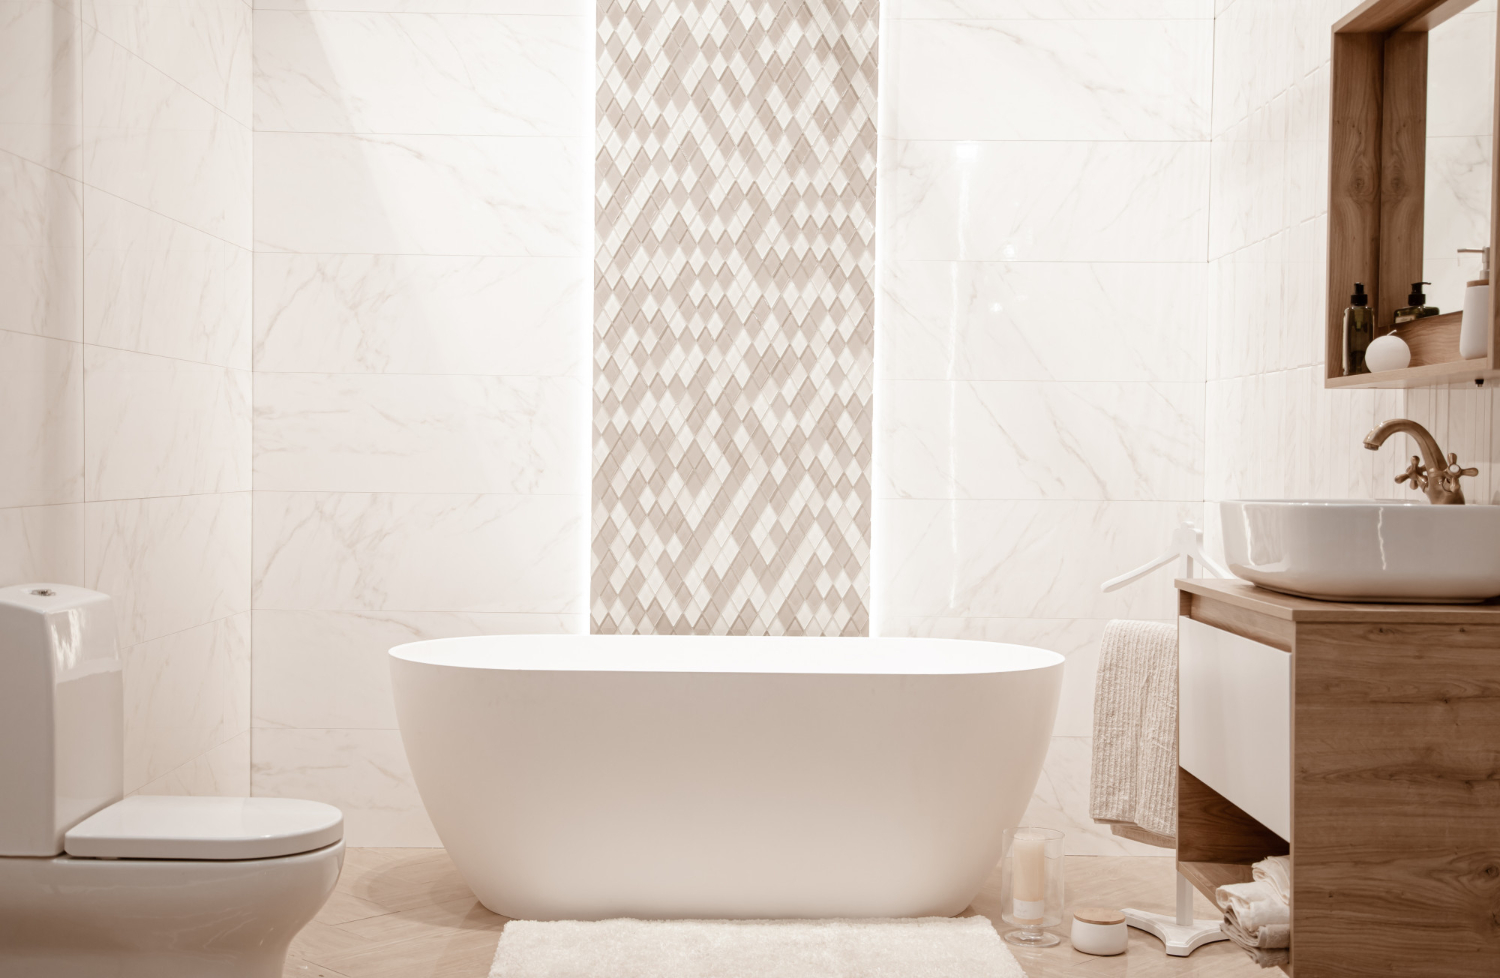 Manfaatkan interior yang simpel dan fungsional untuk kamar mandi minimalis.